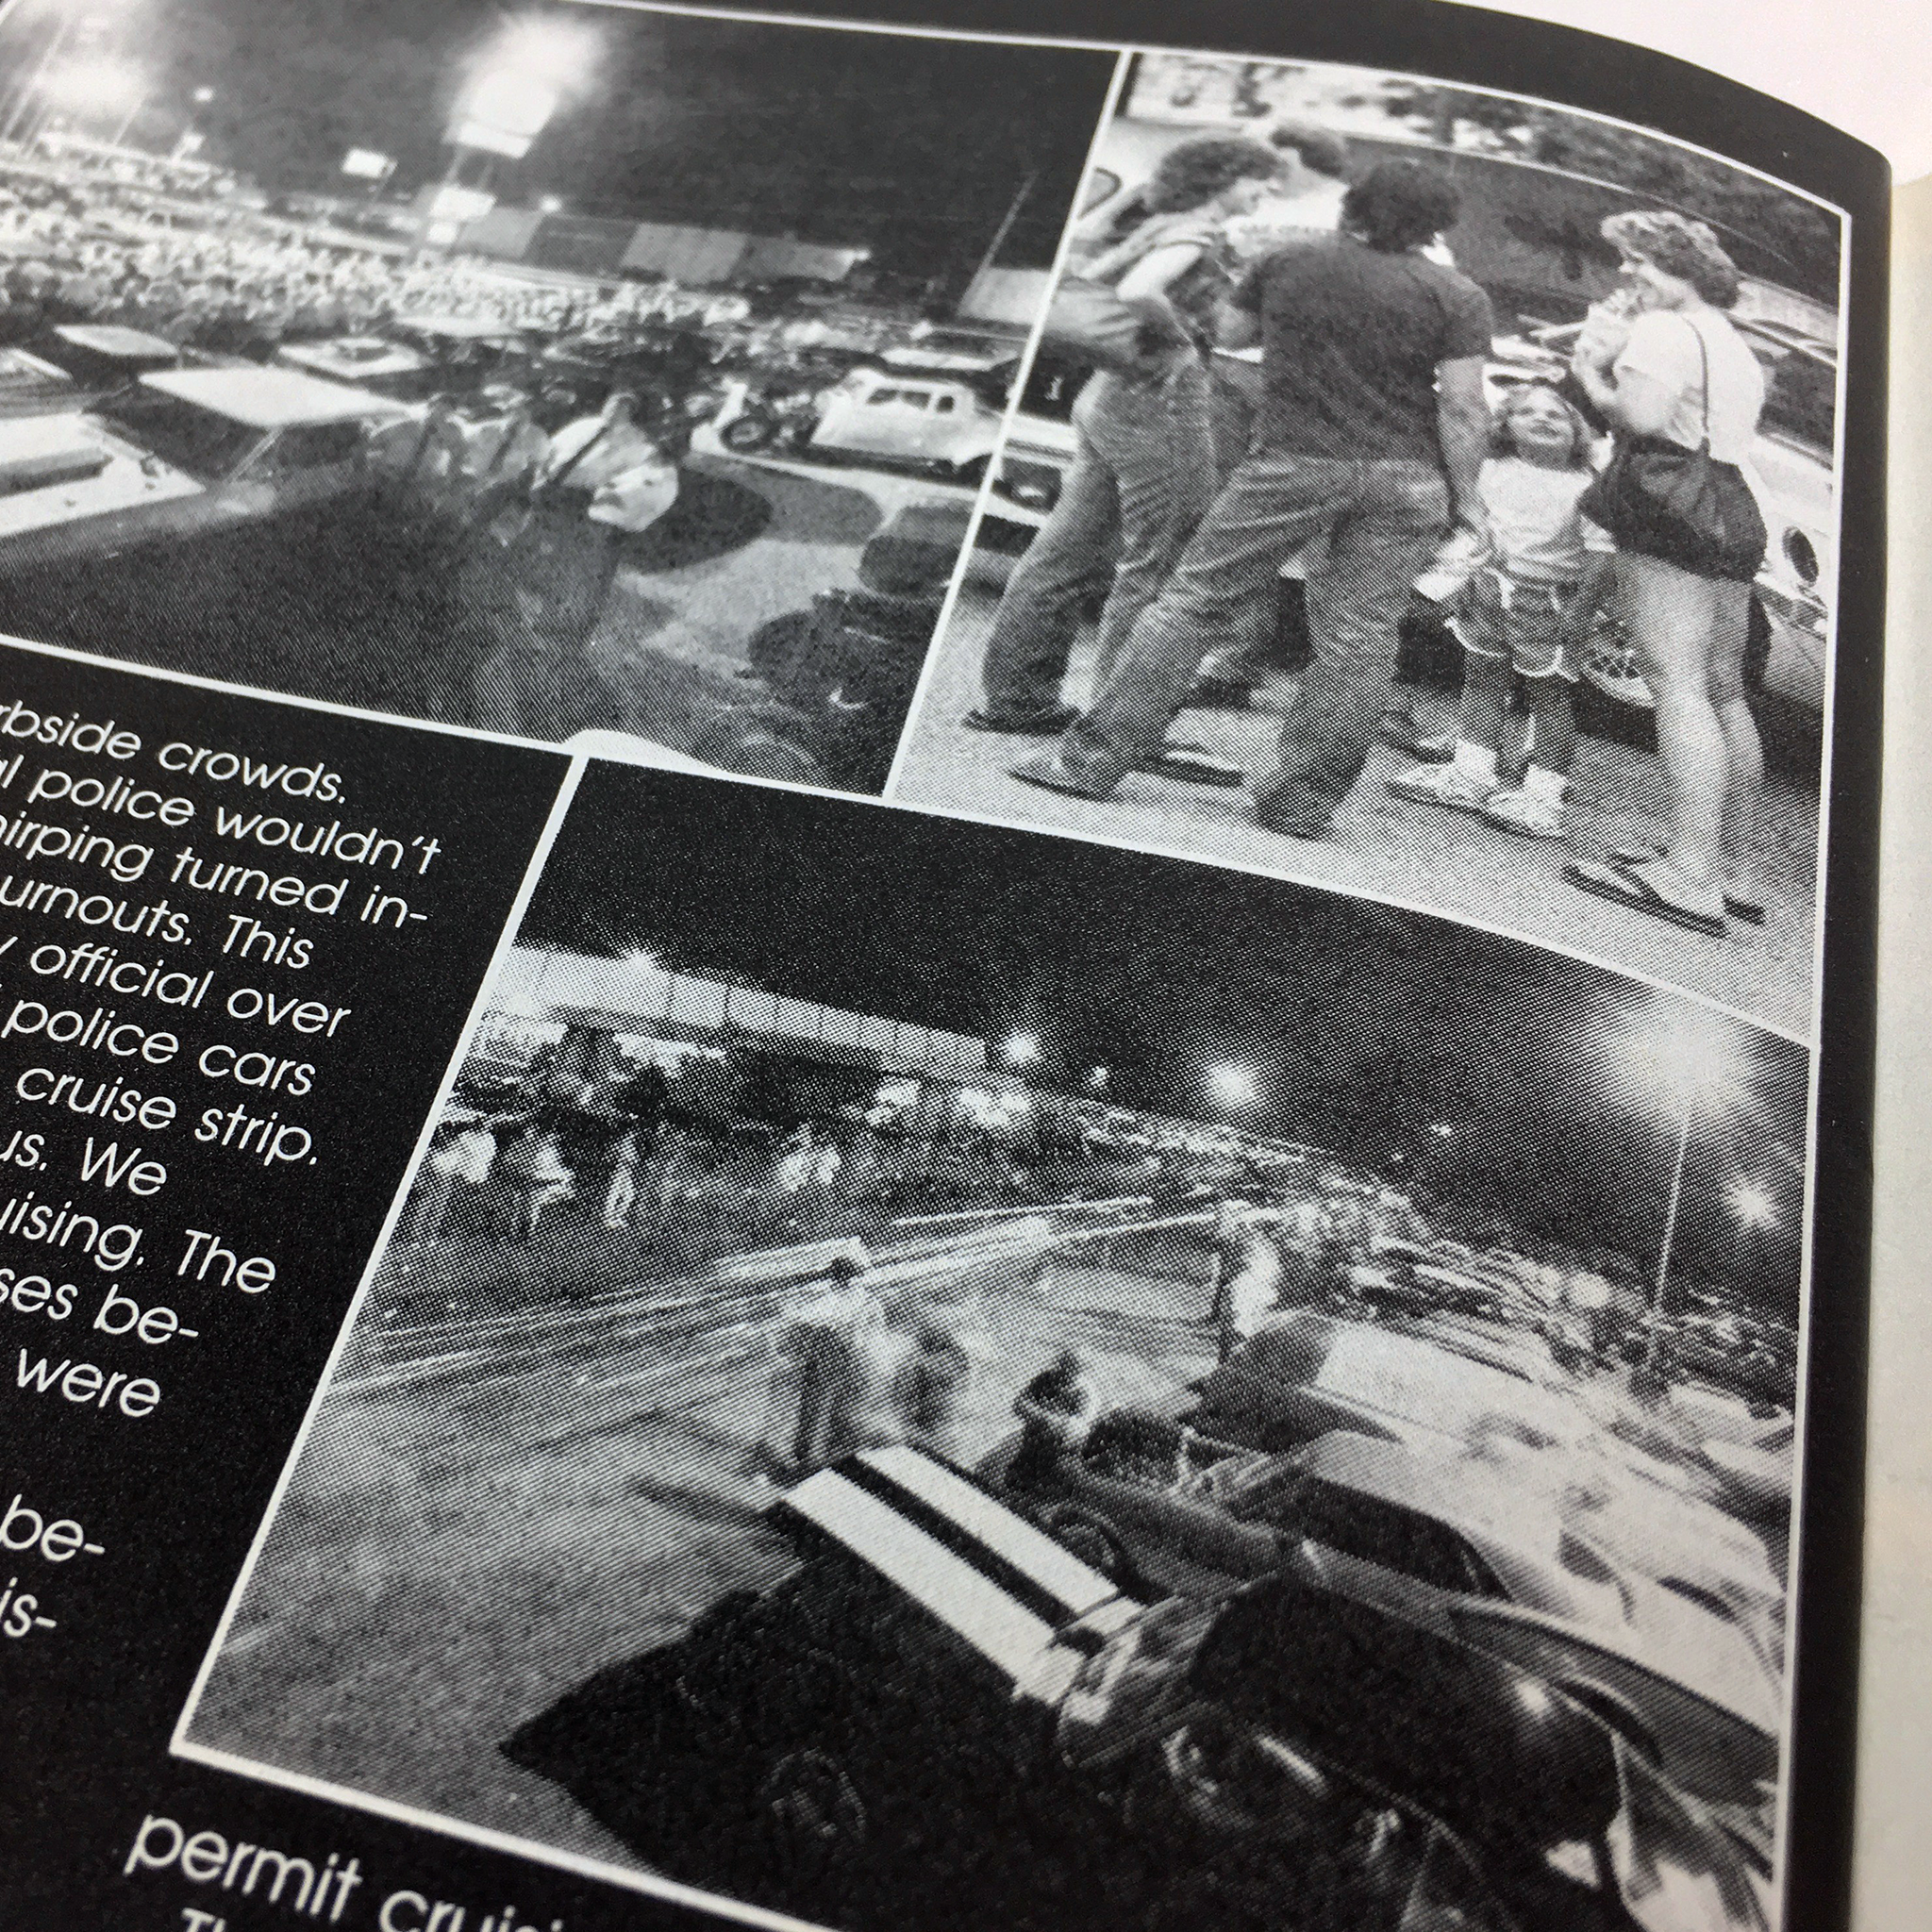 Car Craft Magazine (Jan 1984), feat. "Dayton, OH - Where Cruisin' USA Began"